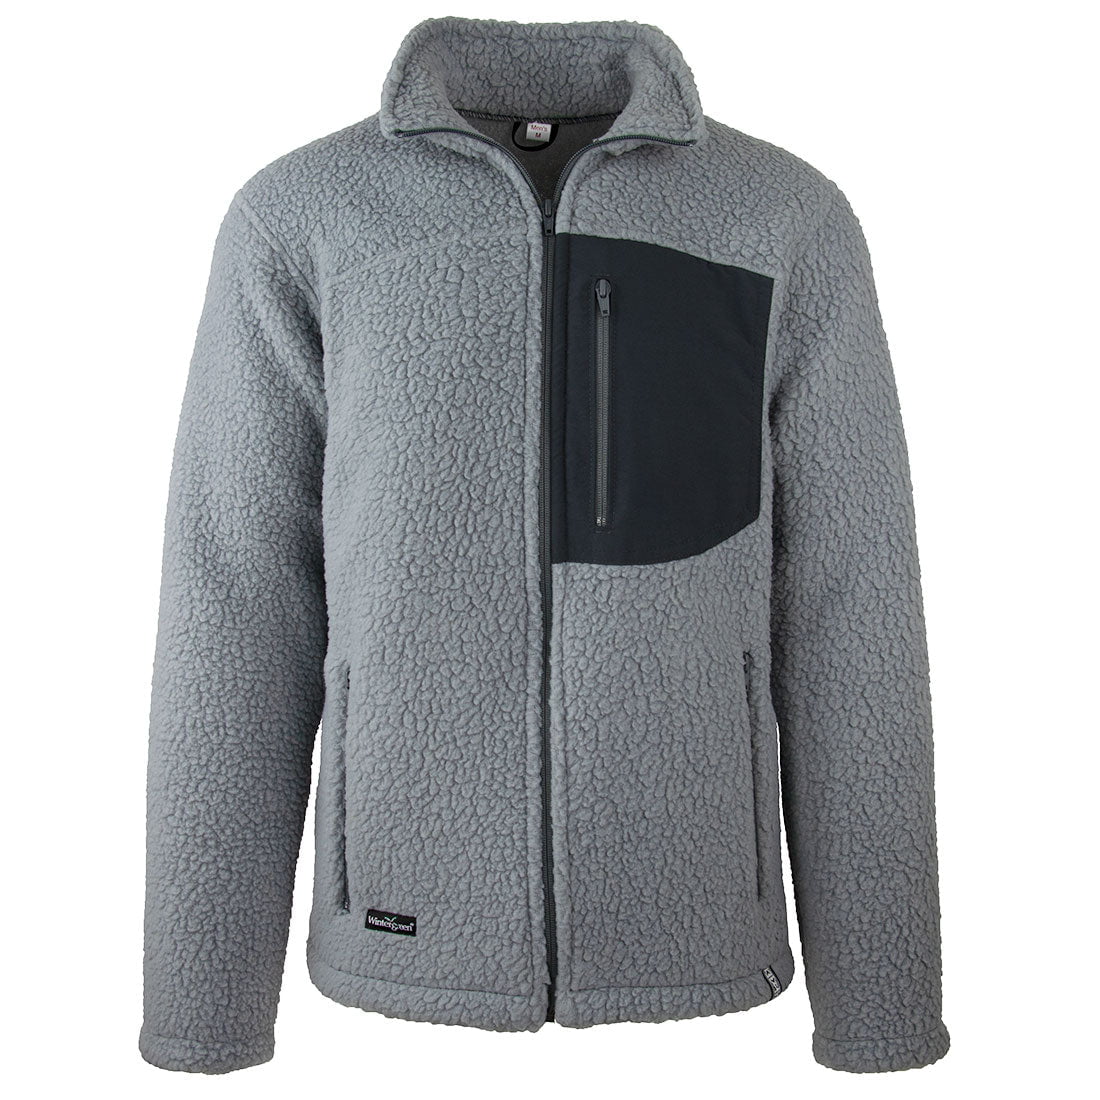 Wintergreen Shearling Fleece Jacket (Men's)-Made in Ely, MN.